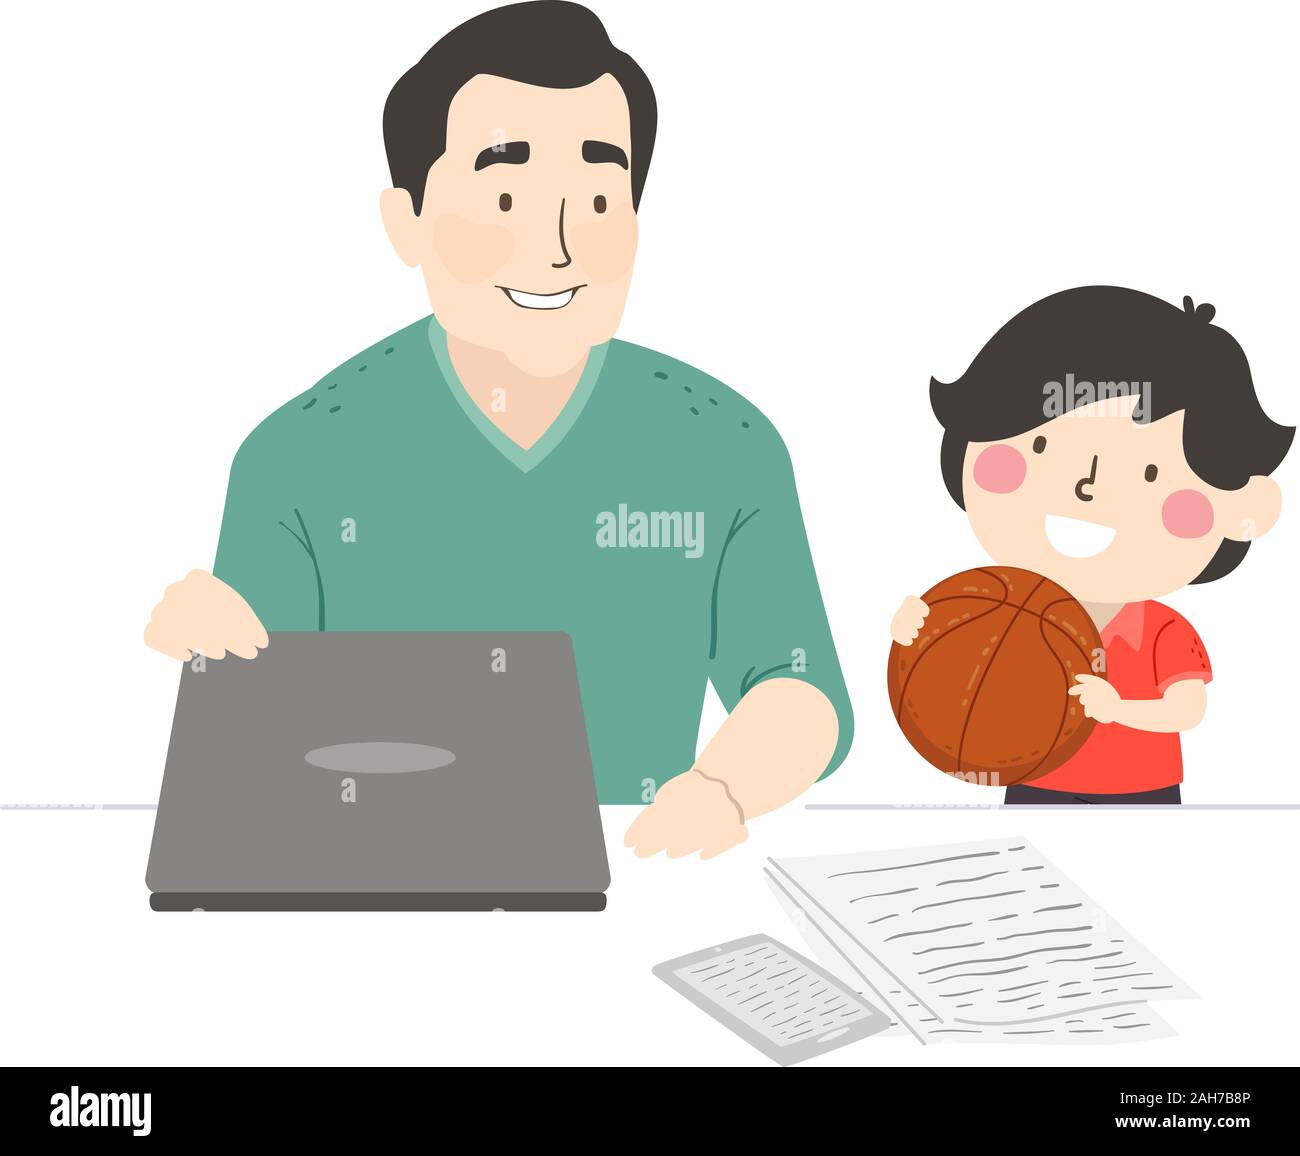 Illustrazione di un uomo chiudendo il suo laptop per giocare a pallacanestro con suo figlio, risoluzione di nuovi anni, trascorrere più tempo in famiglia Foto Stock